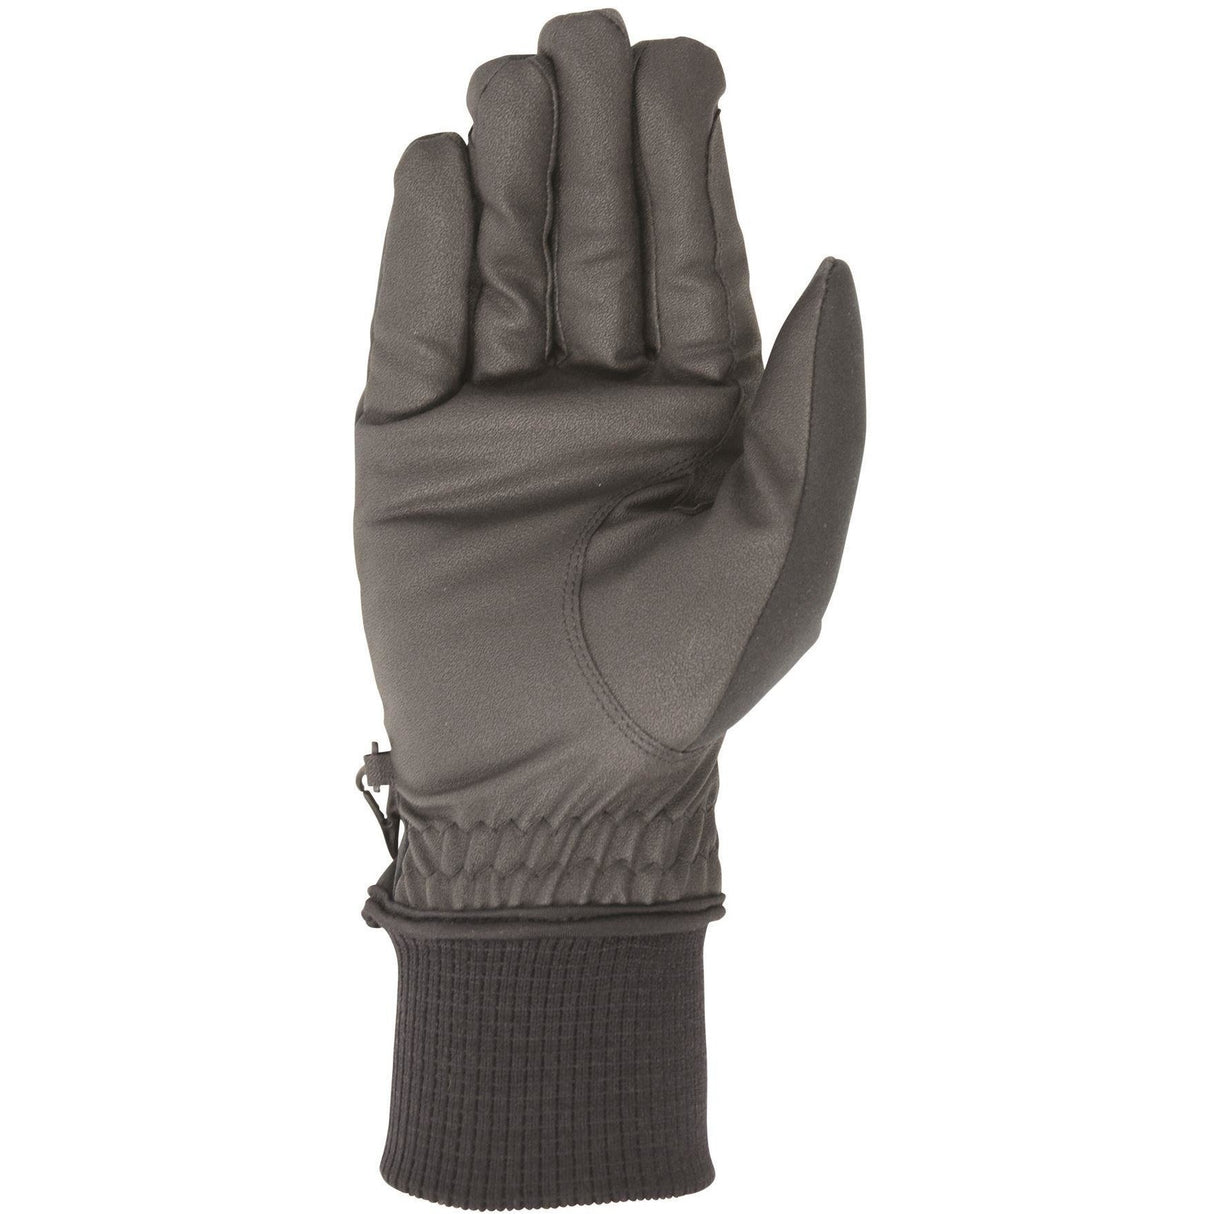 Hy5 Ultra Warm Softshell-Handschuhe